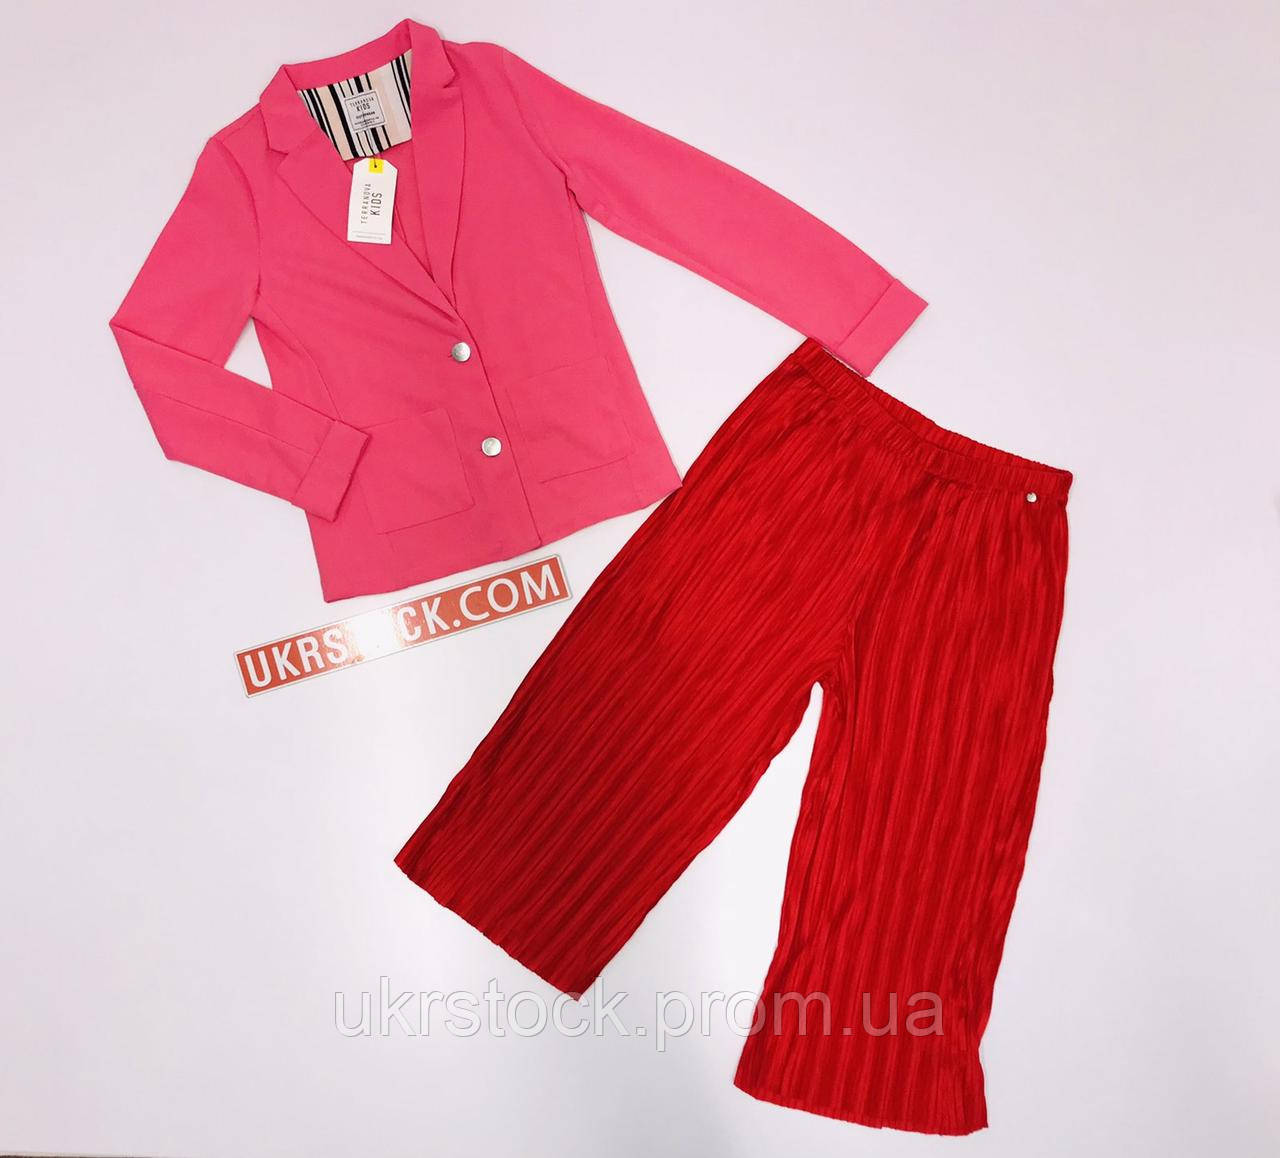 Дитячий одяг Terranova, сток оптом дитячий одяг